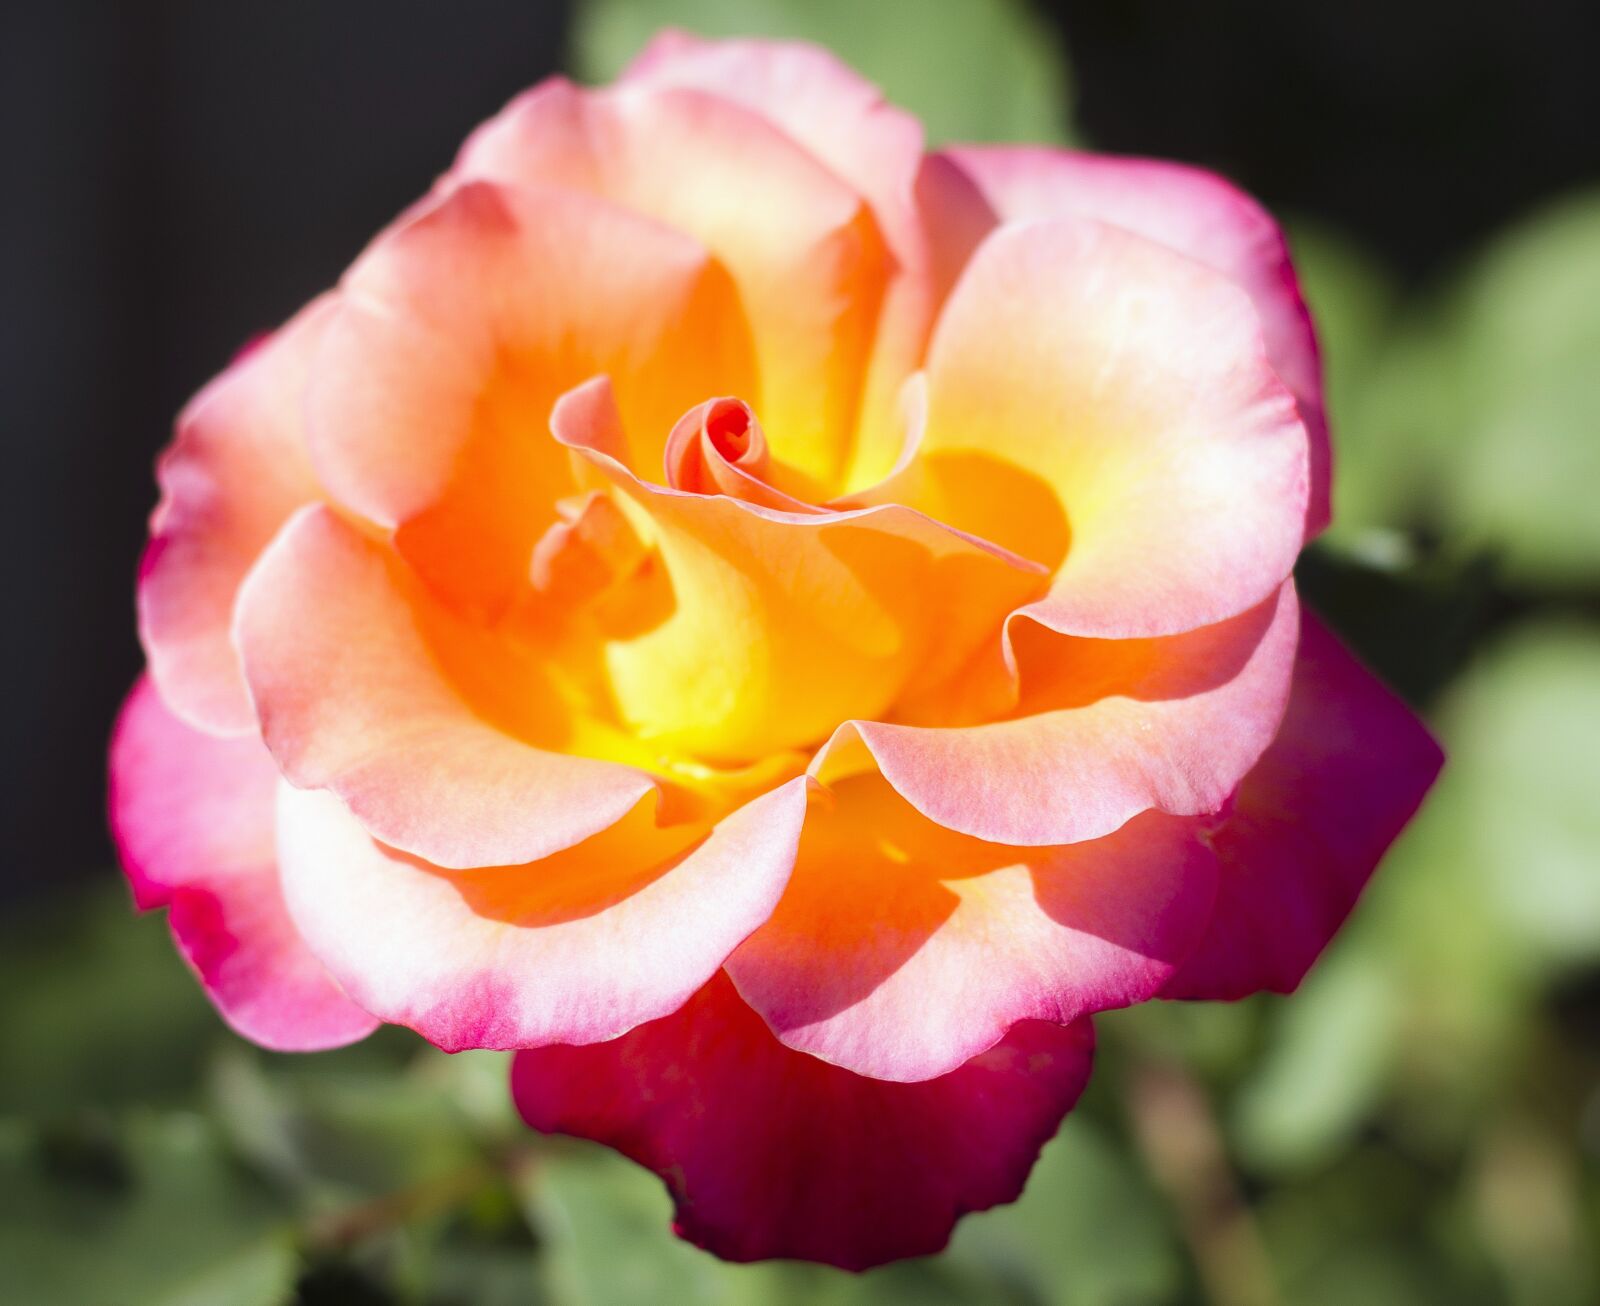 Canon EOS 7D + Canon EF 50mm F1.8 II sample photo. Rose, rosebush, garden photography